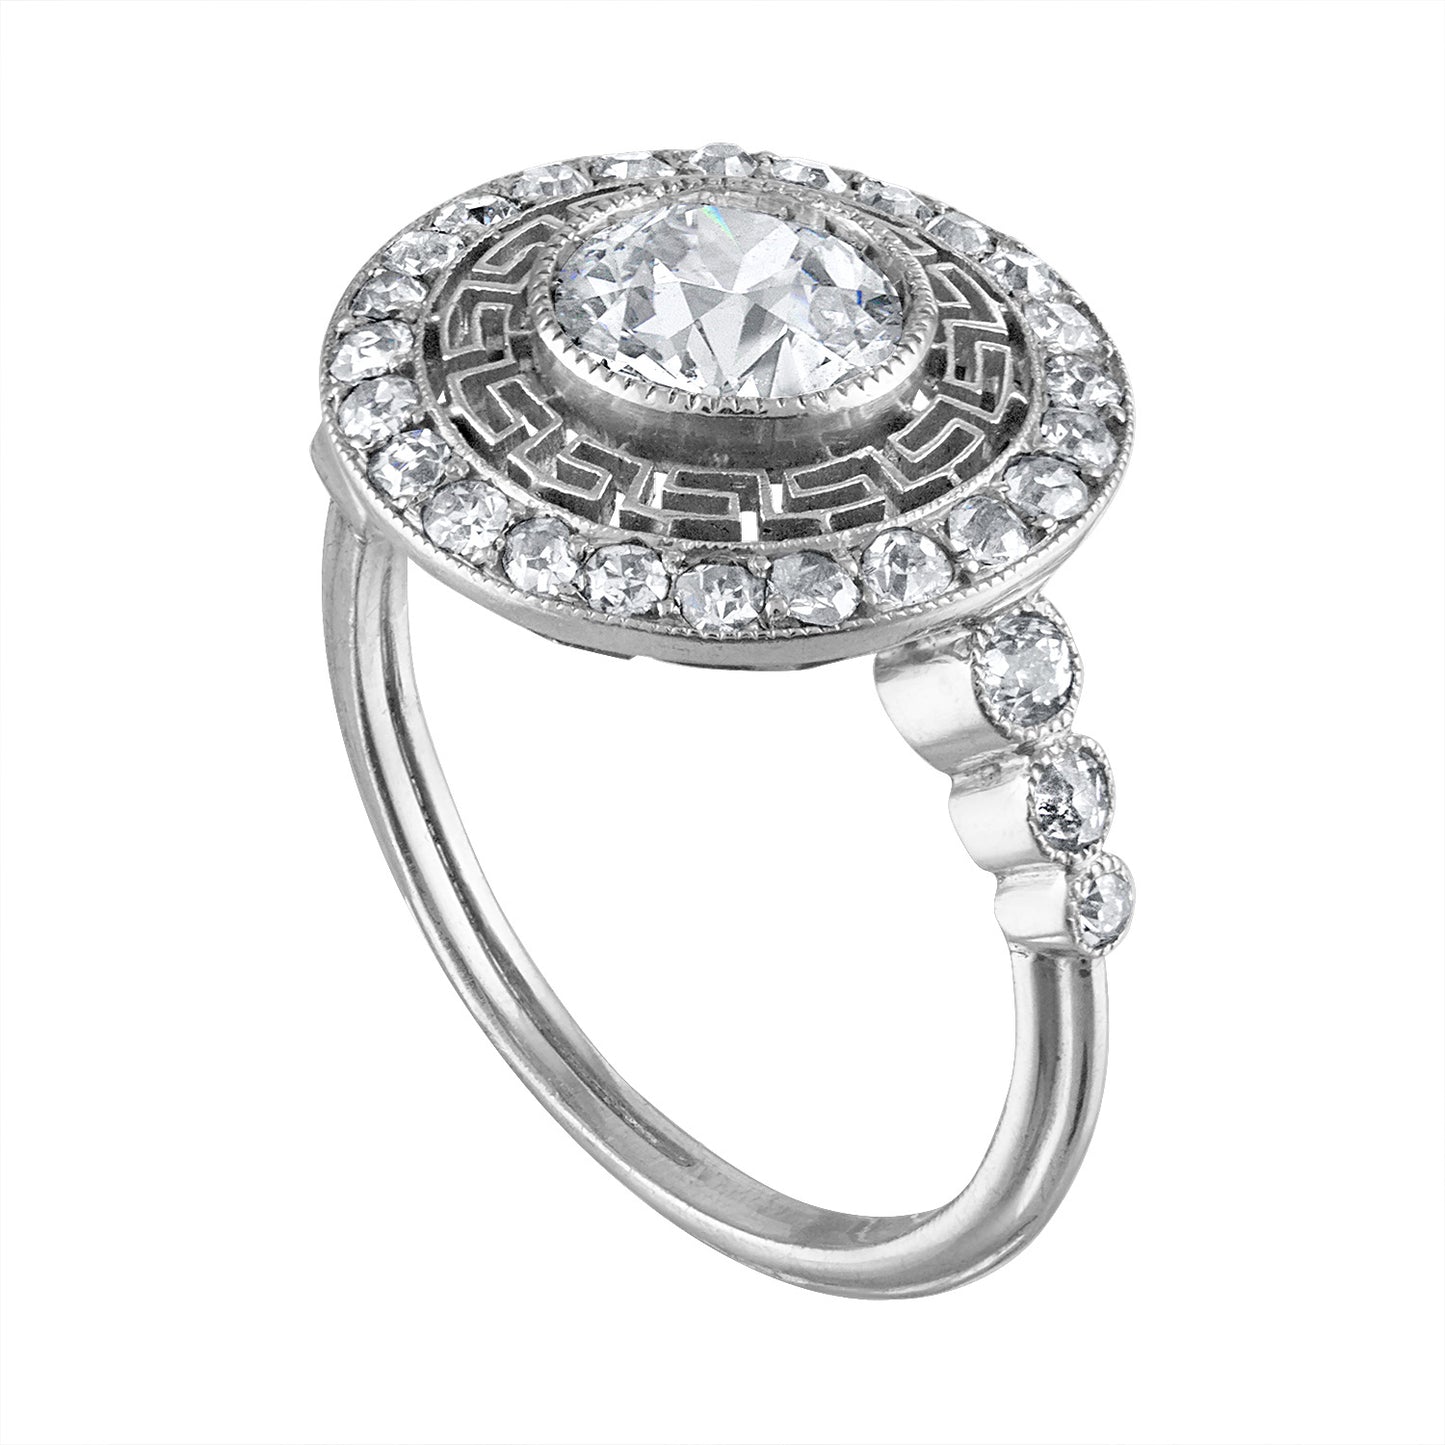 Diamond "Greek Key" Ring